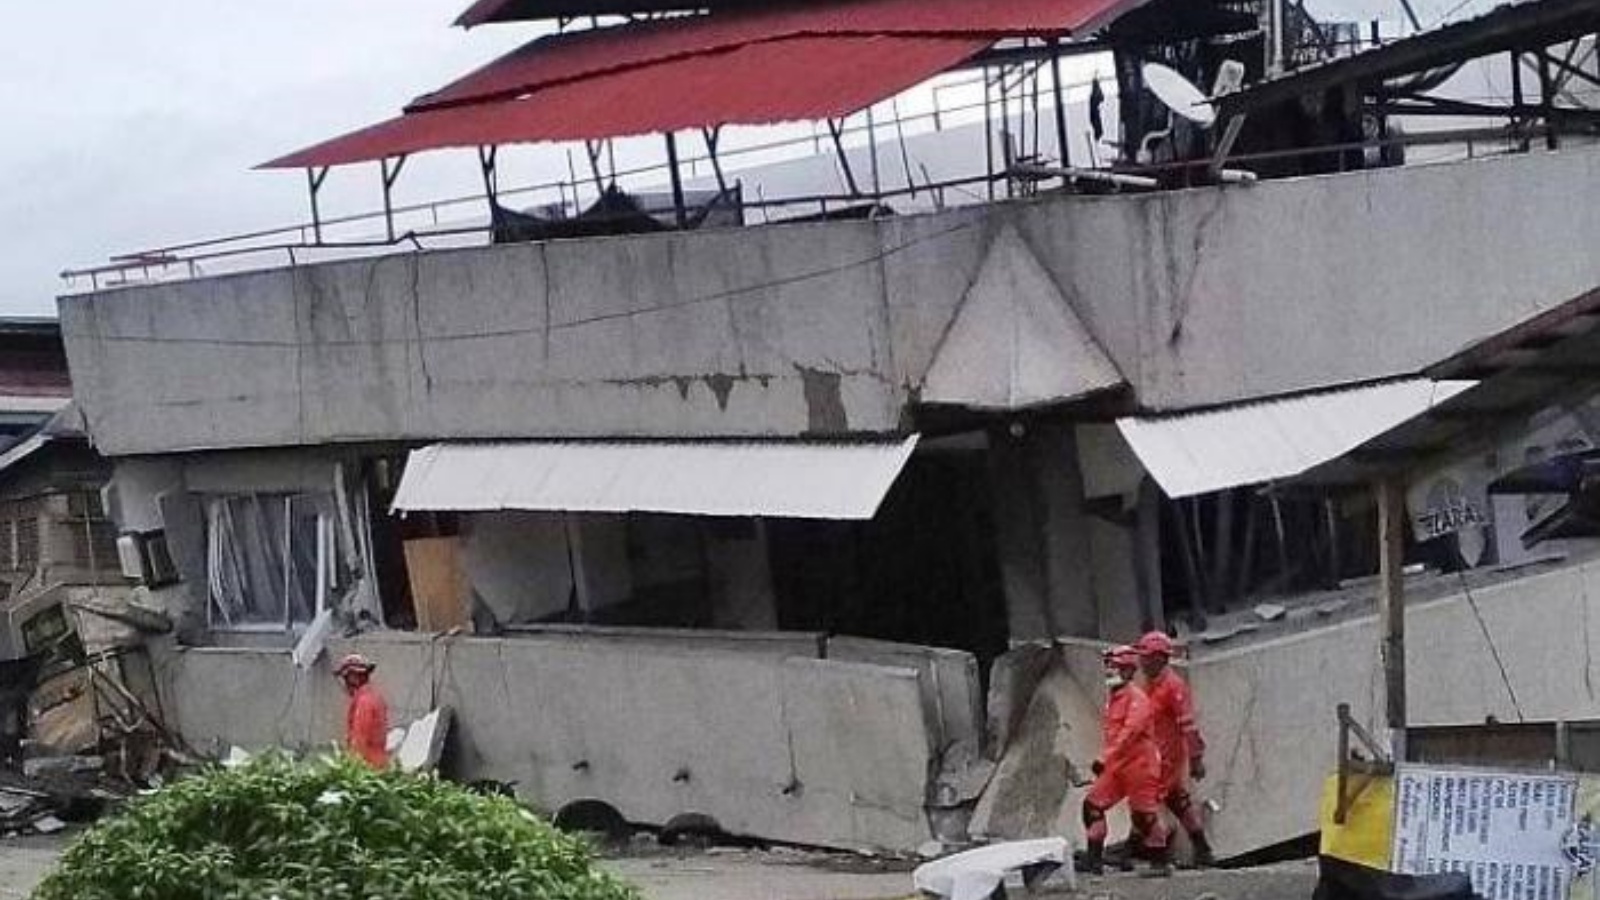 رجال إنقاذ بجانب منزل مدمر بفعل الزلزال الذي ضرب الفيليبين. بتاريخ 27 أيلول/ سبتمبر 2021.